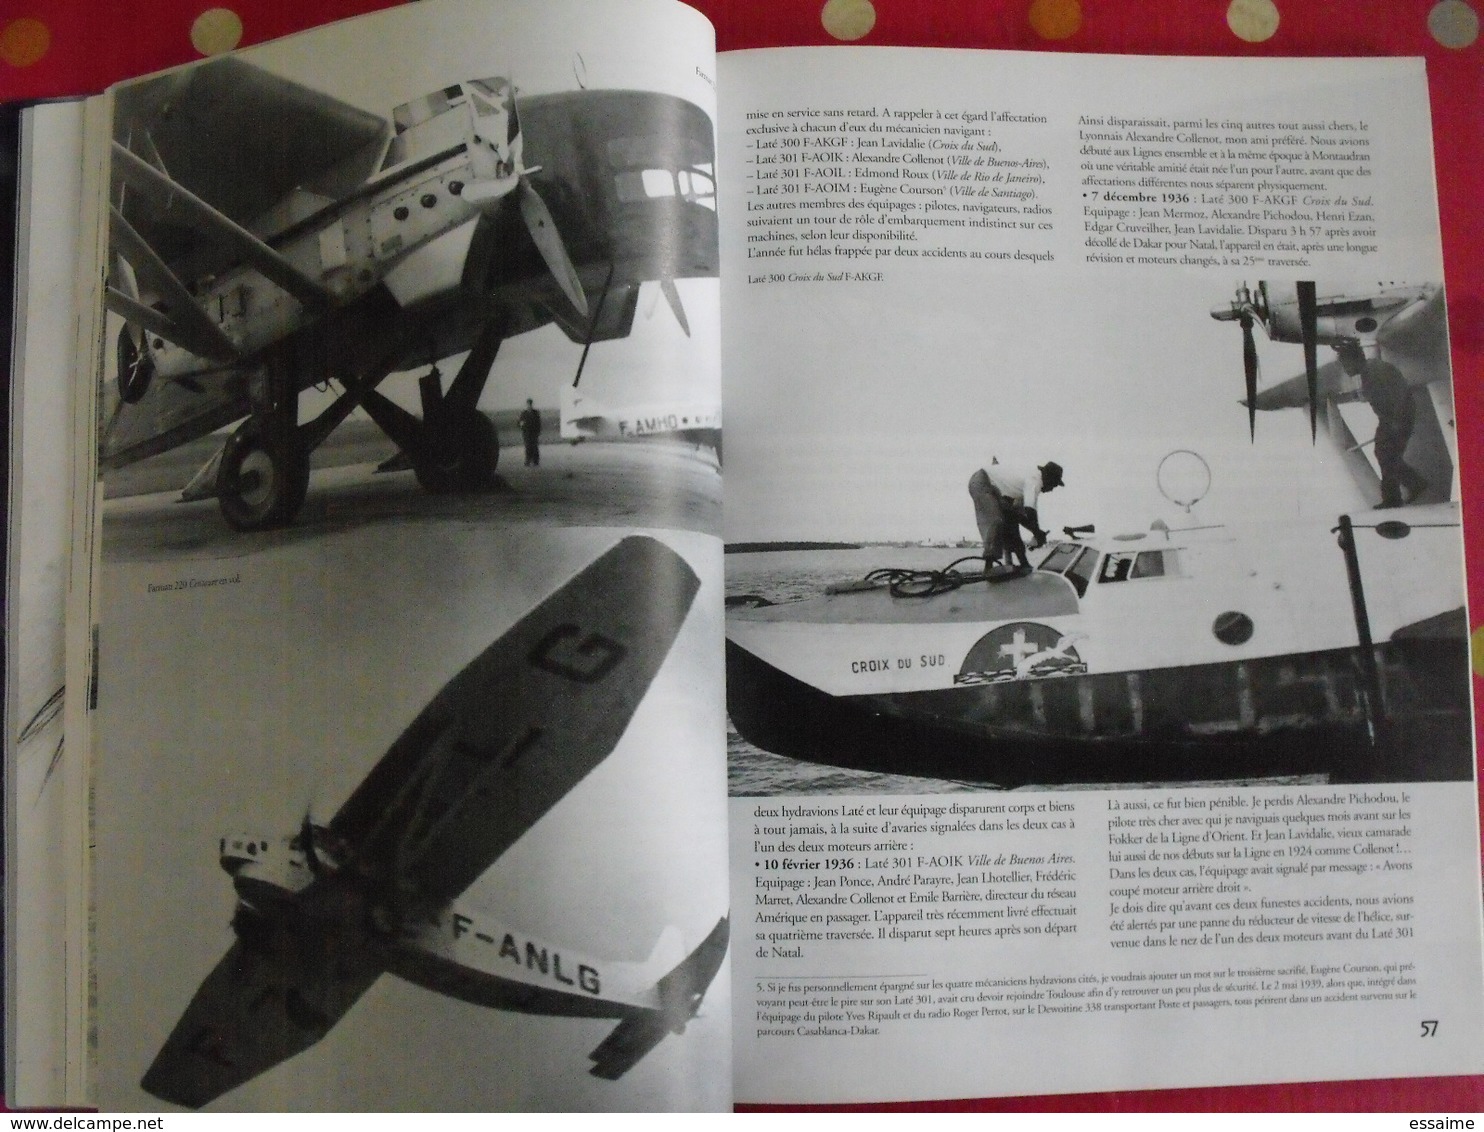 Icare, revue de l'aviation française n° 178 de 2001 édité par le SNPL. Mermoz tome 3